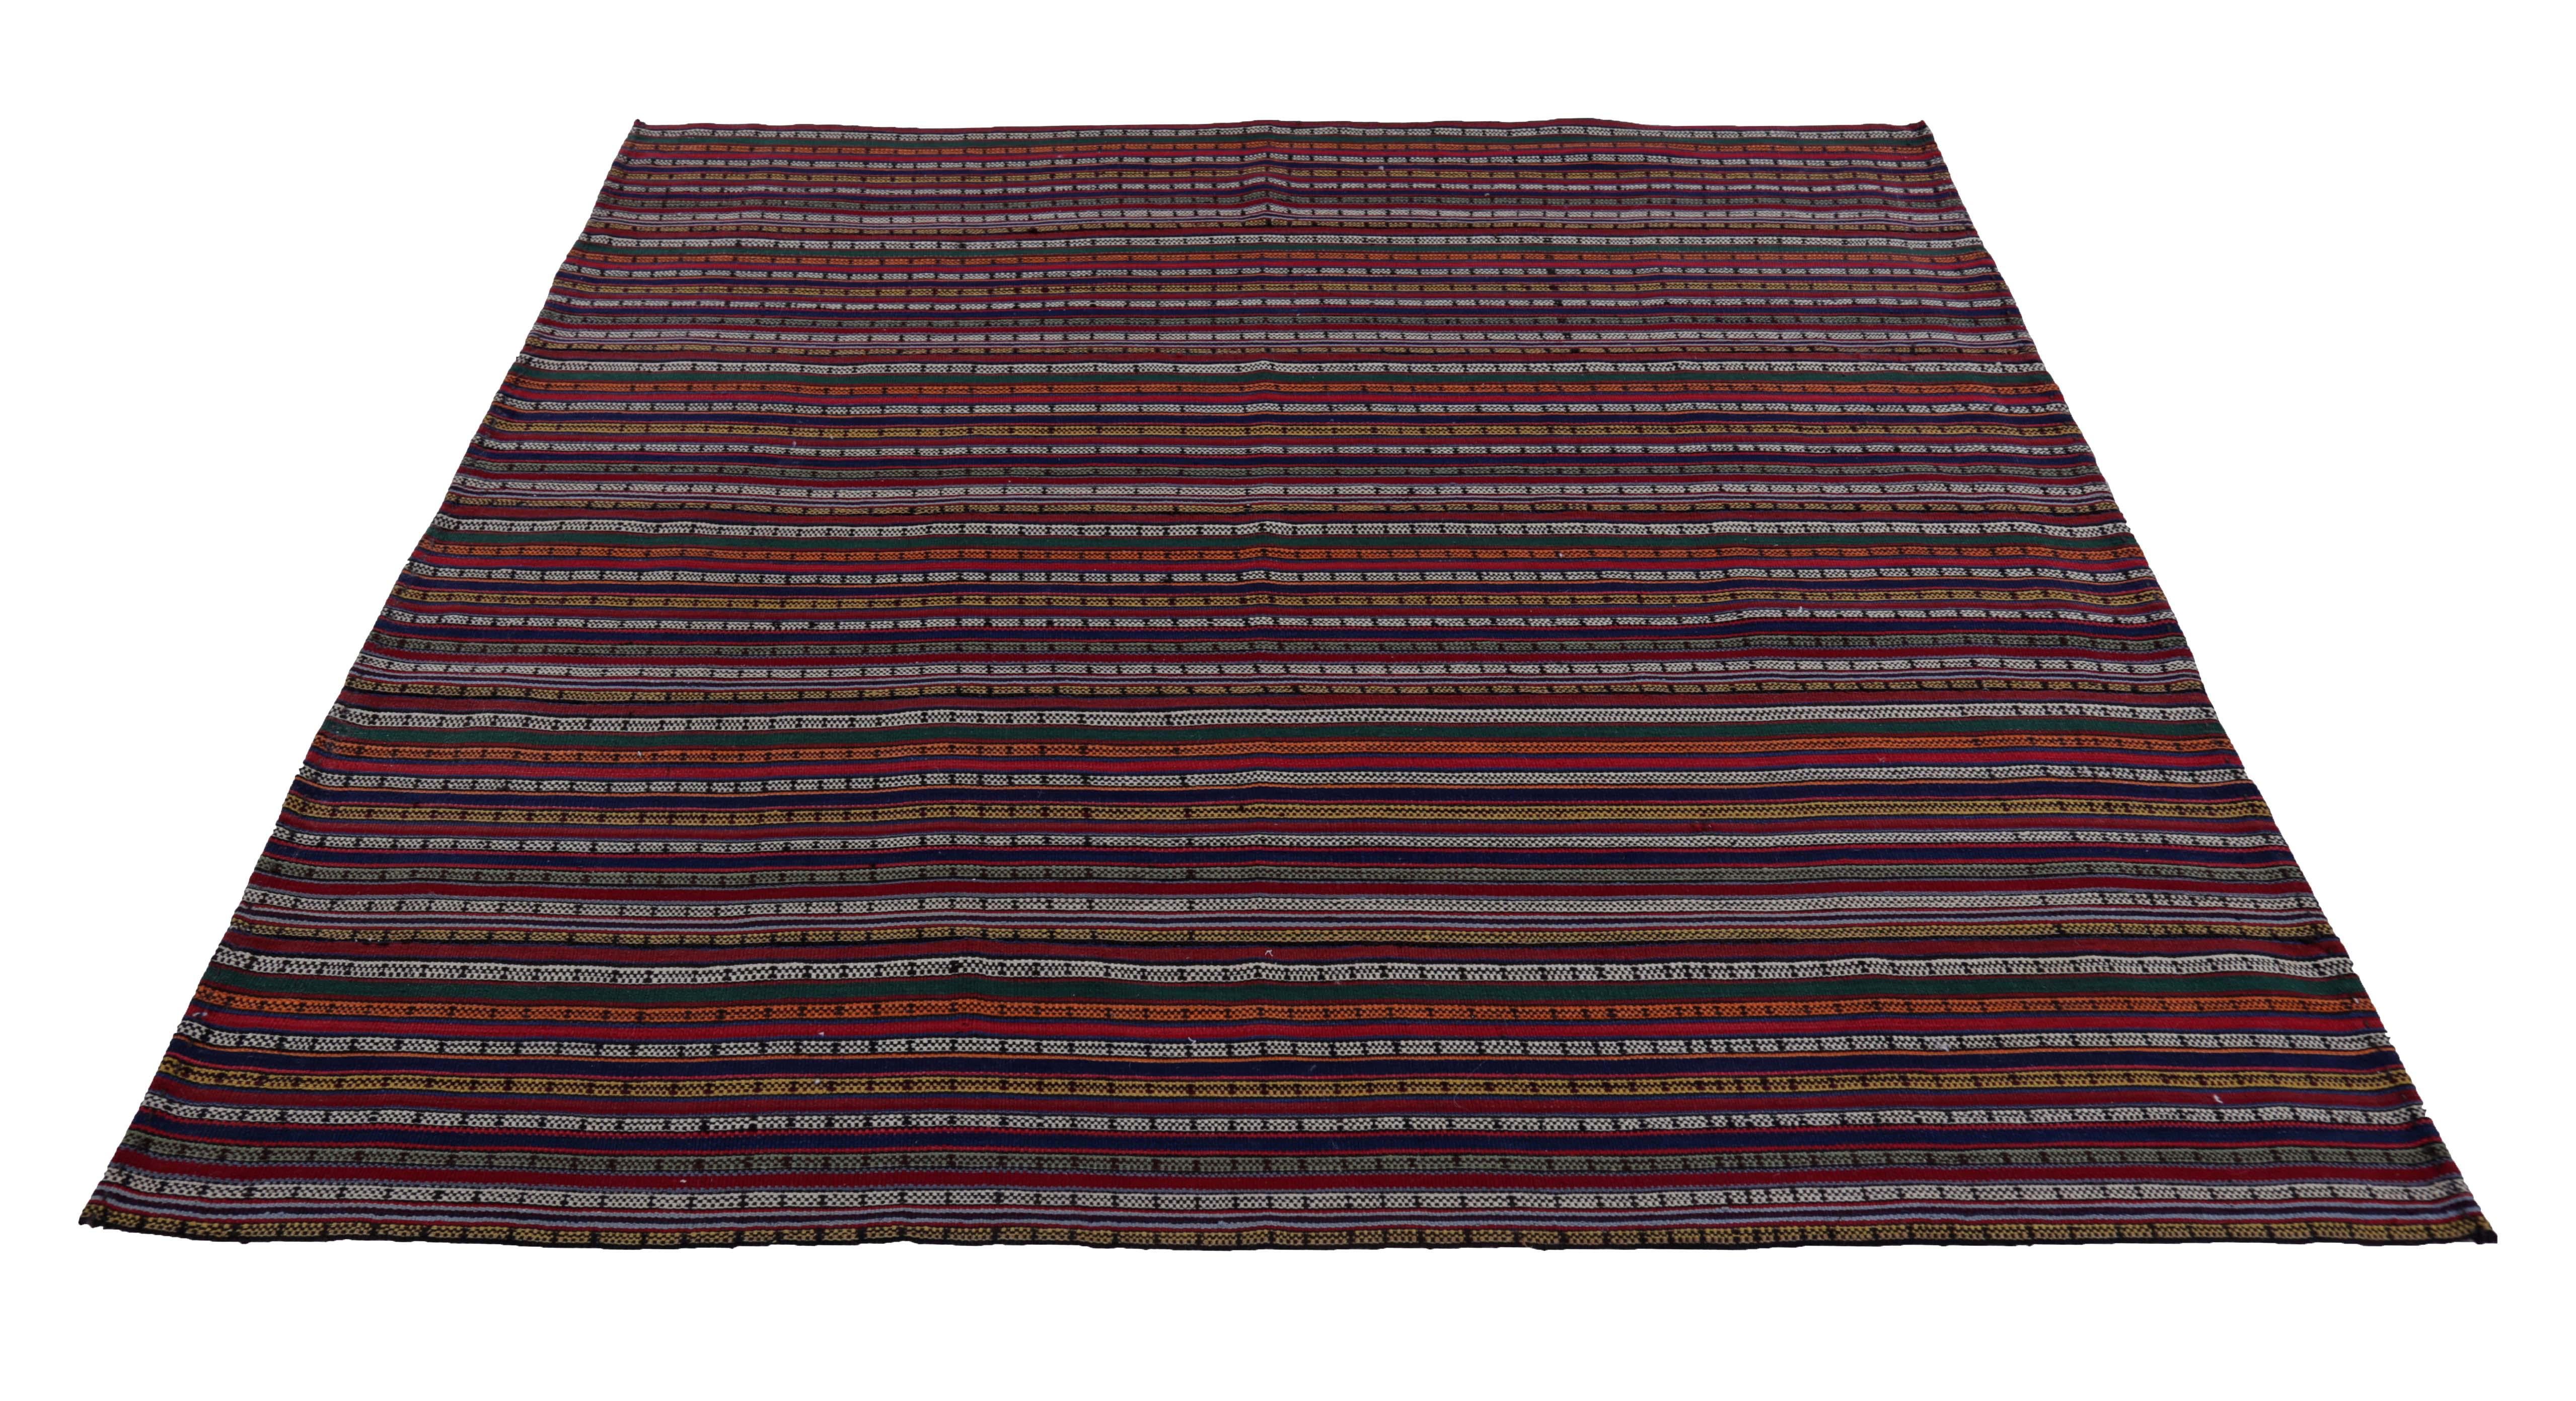 Türkischer Teppich, handgewebt aus feinster Schafswolle und gefärbt mit natürlichen Pflanzenfarben, die für Menschen und Haustiere unbedenklich sind. Es handelt sich um ein traditionelles Kilim-Flachgewebemuster mit orangefarbenen, weißen, blauen